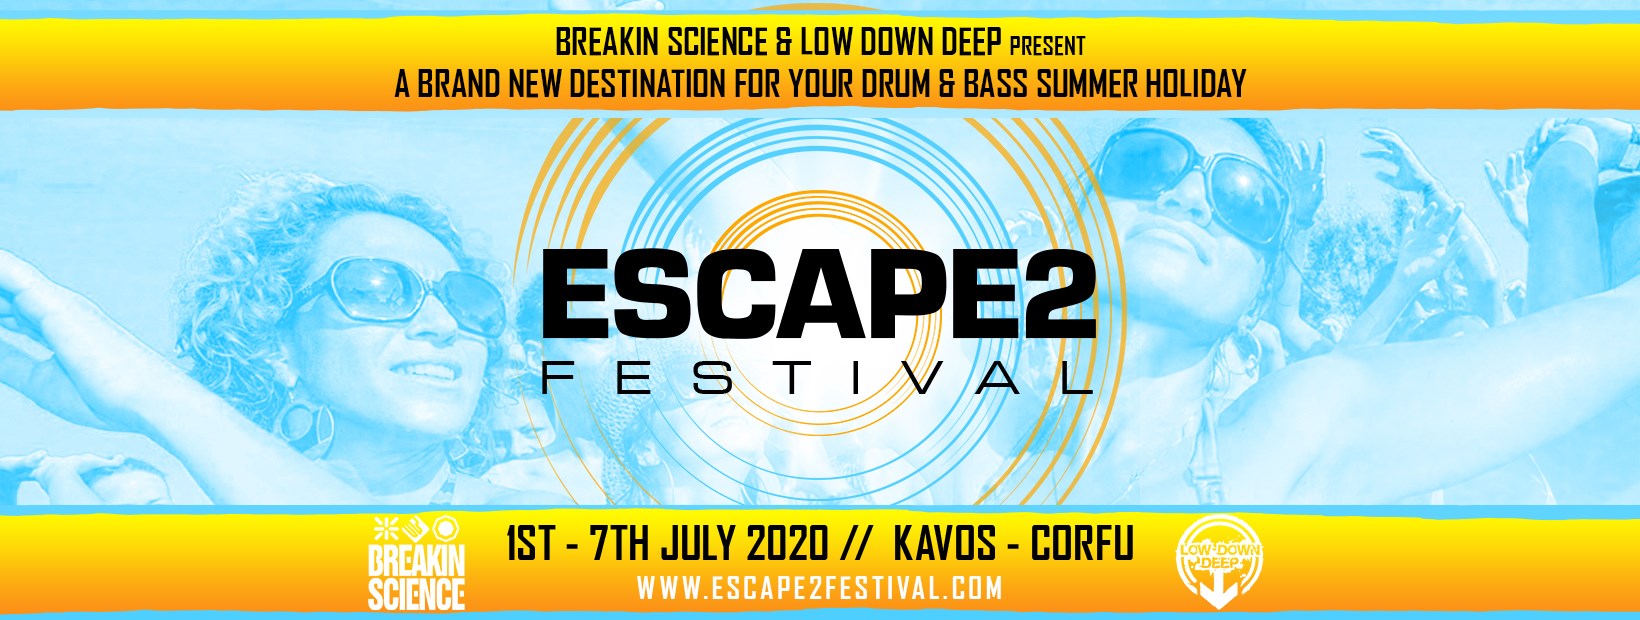 1.7.20 Escape2 Festival - Corfu 2020